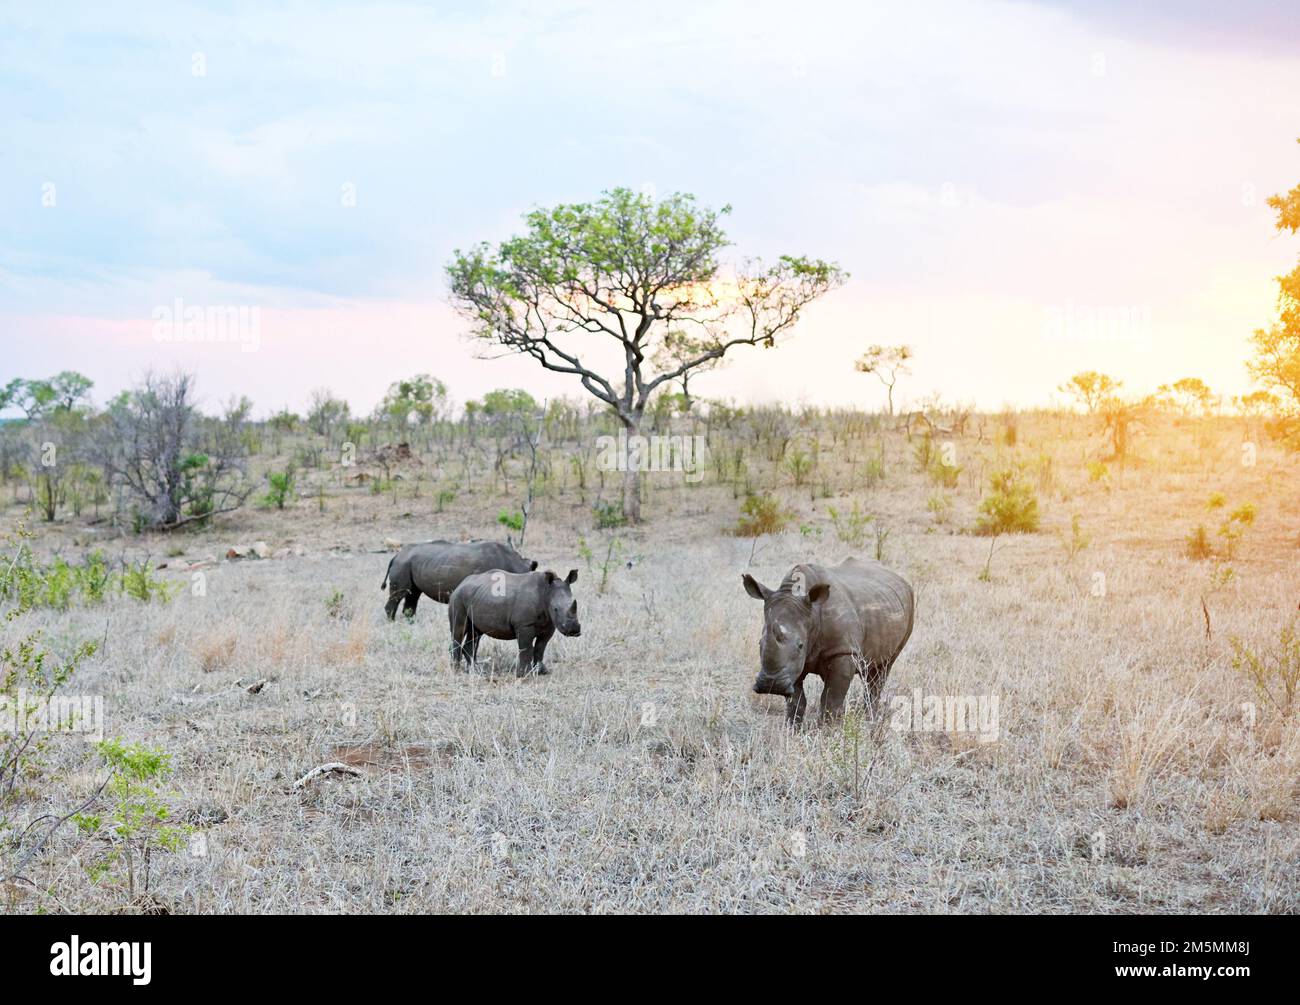 Die Tage enden in der Savanne. Nashörner in ihrem natürlichen Lebensraum. Stockfoto